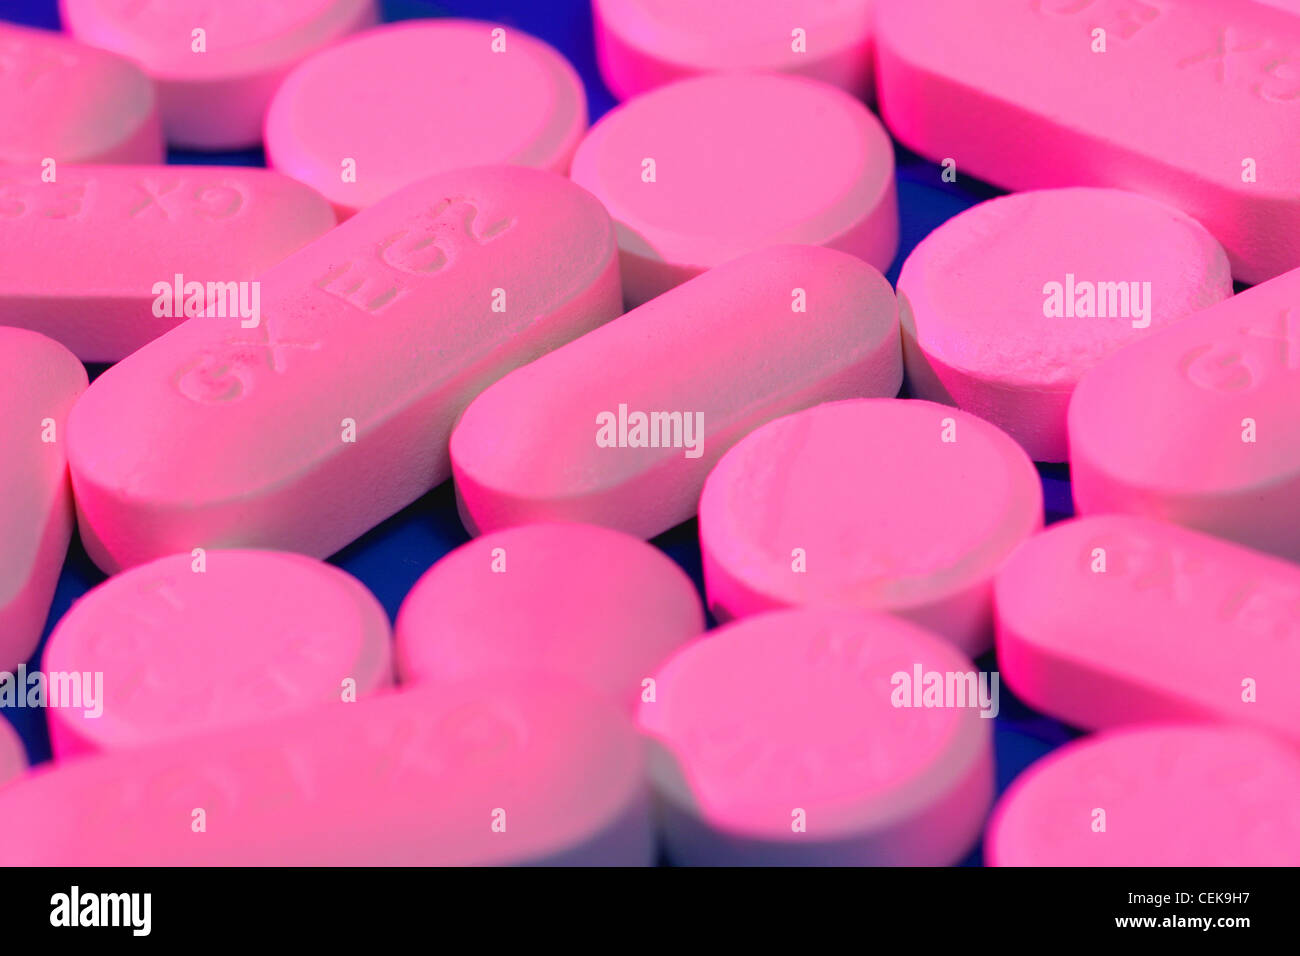 Rosa länglich geformte Tabletten und Runde rosa Tabletten auf blauem  Hintergrund Stockfotografie - Alamy